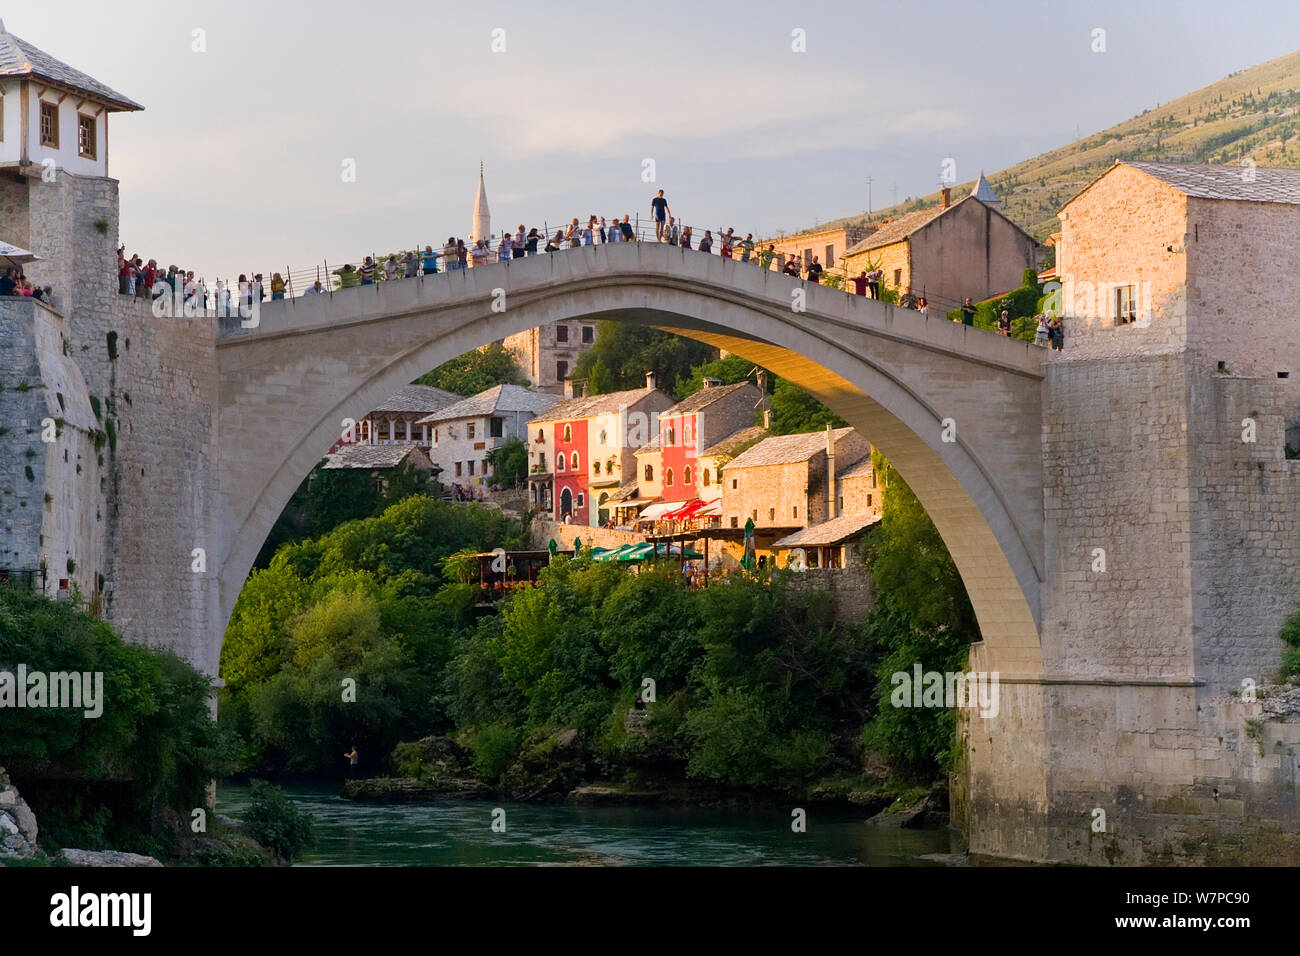 Die berühmte Alte Brücke von Mostar 1566 gebaut im Jahr 1993 zerstört wurde, die "Neue Alte Brücke", wie bekannt ist, wurde im Jahr 2004 abgeschlossen, Altstadt, Mostar, Bosnien-Herzegowina, Bosnien und Herzegowina, Balkan, 2007 Stockfoto